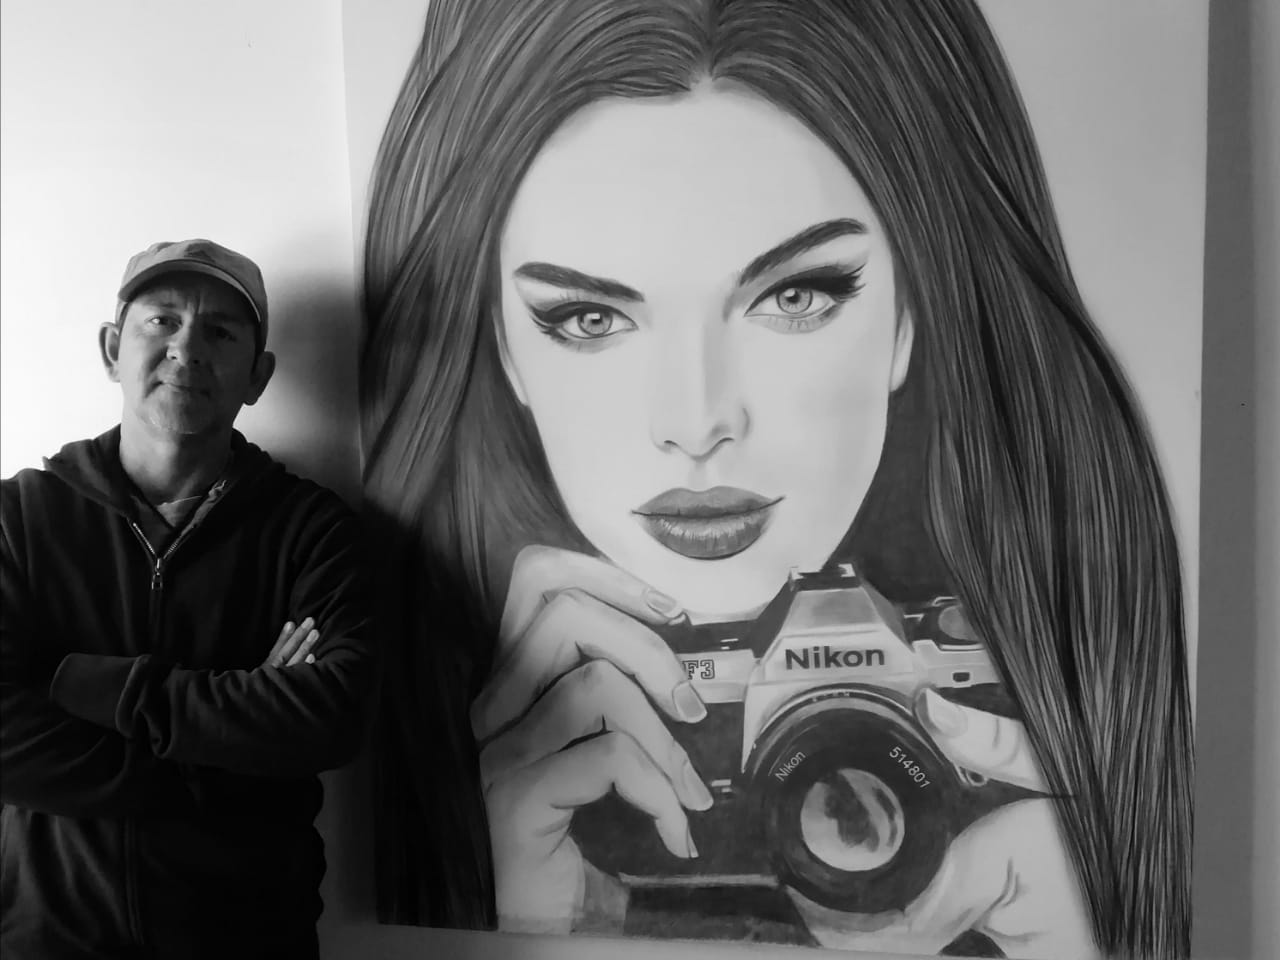 Angel Rozzano, el artista plástico que retrata a los famosos